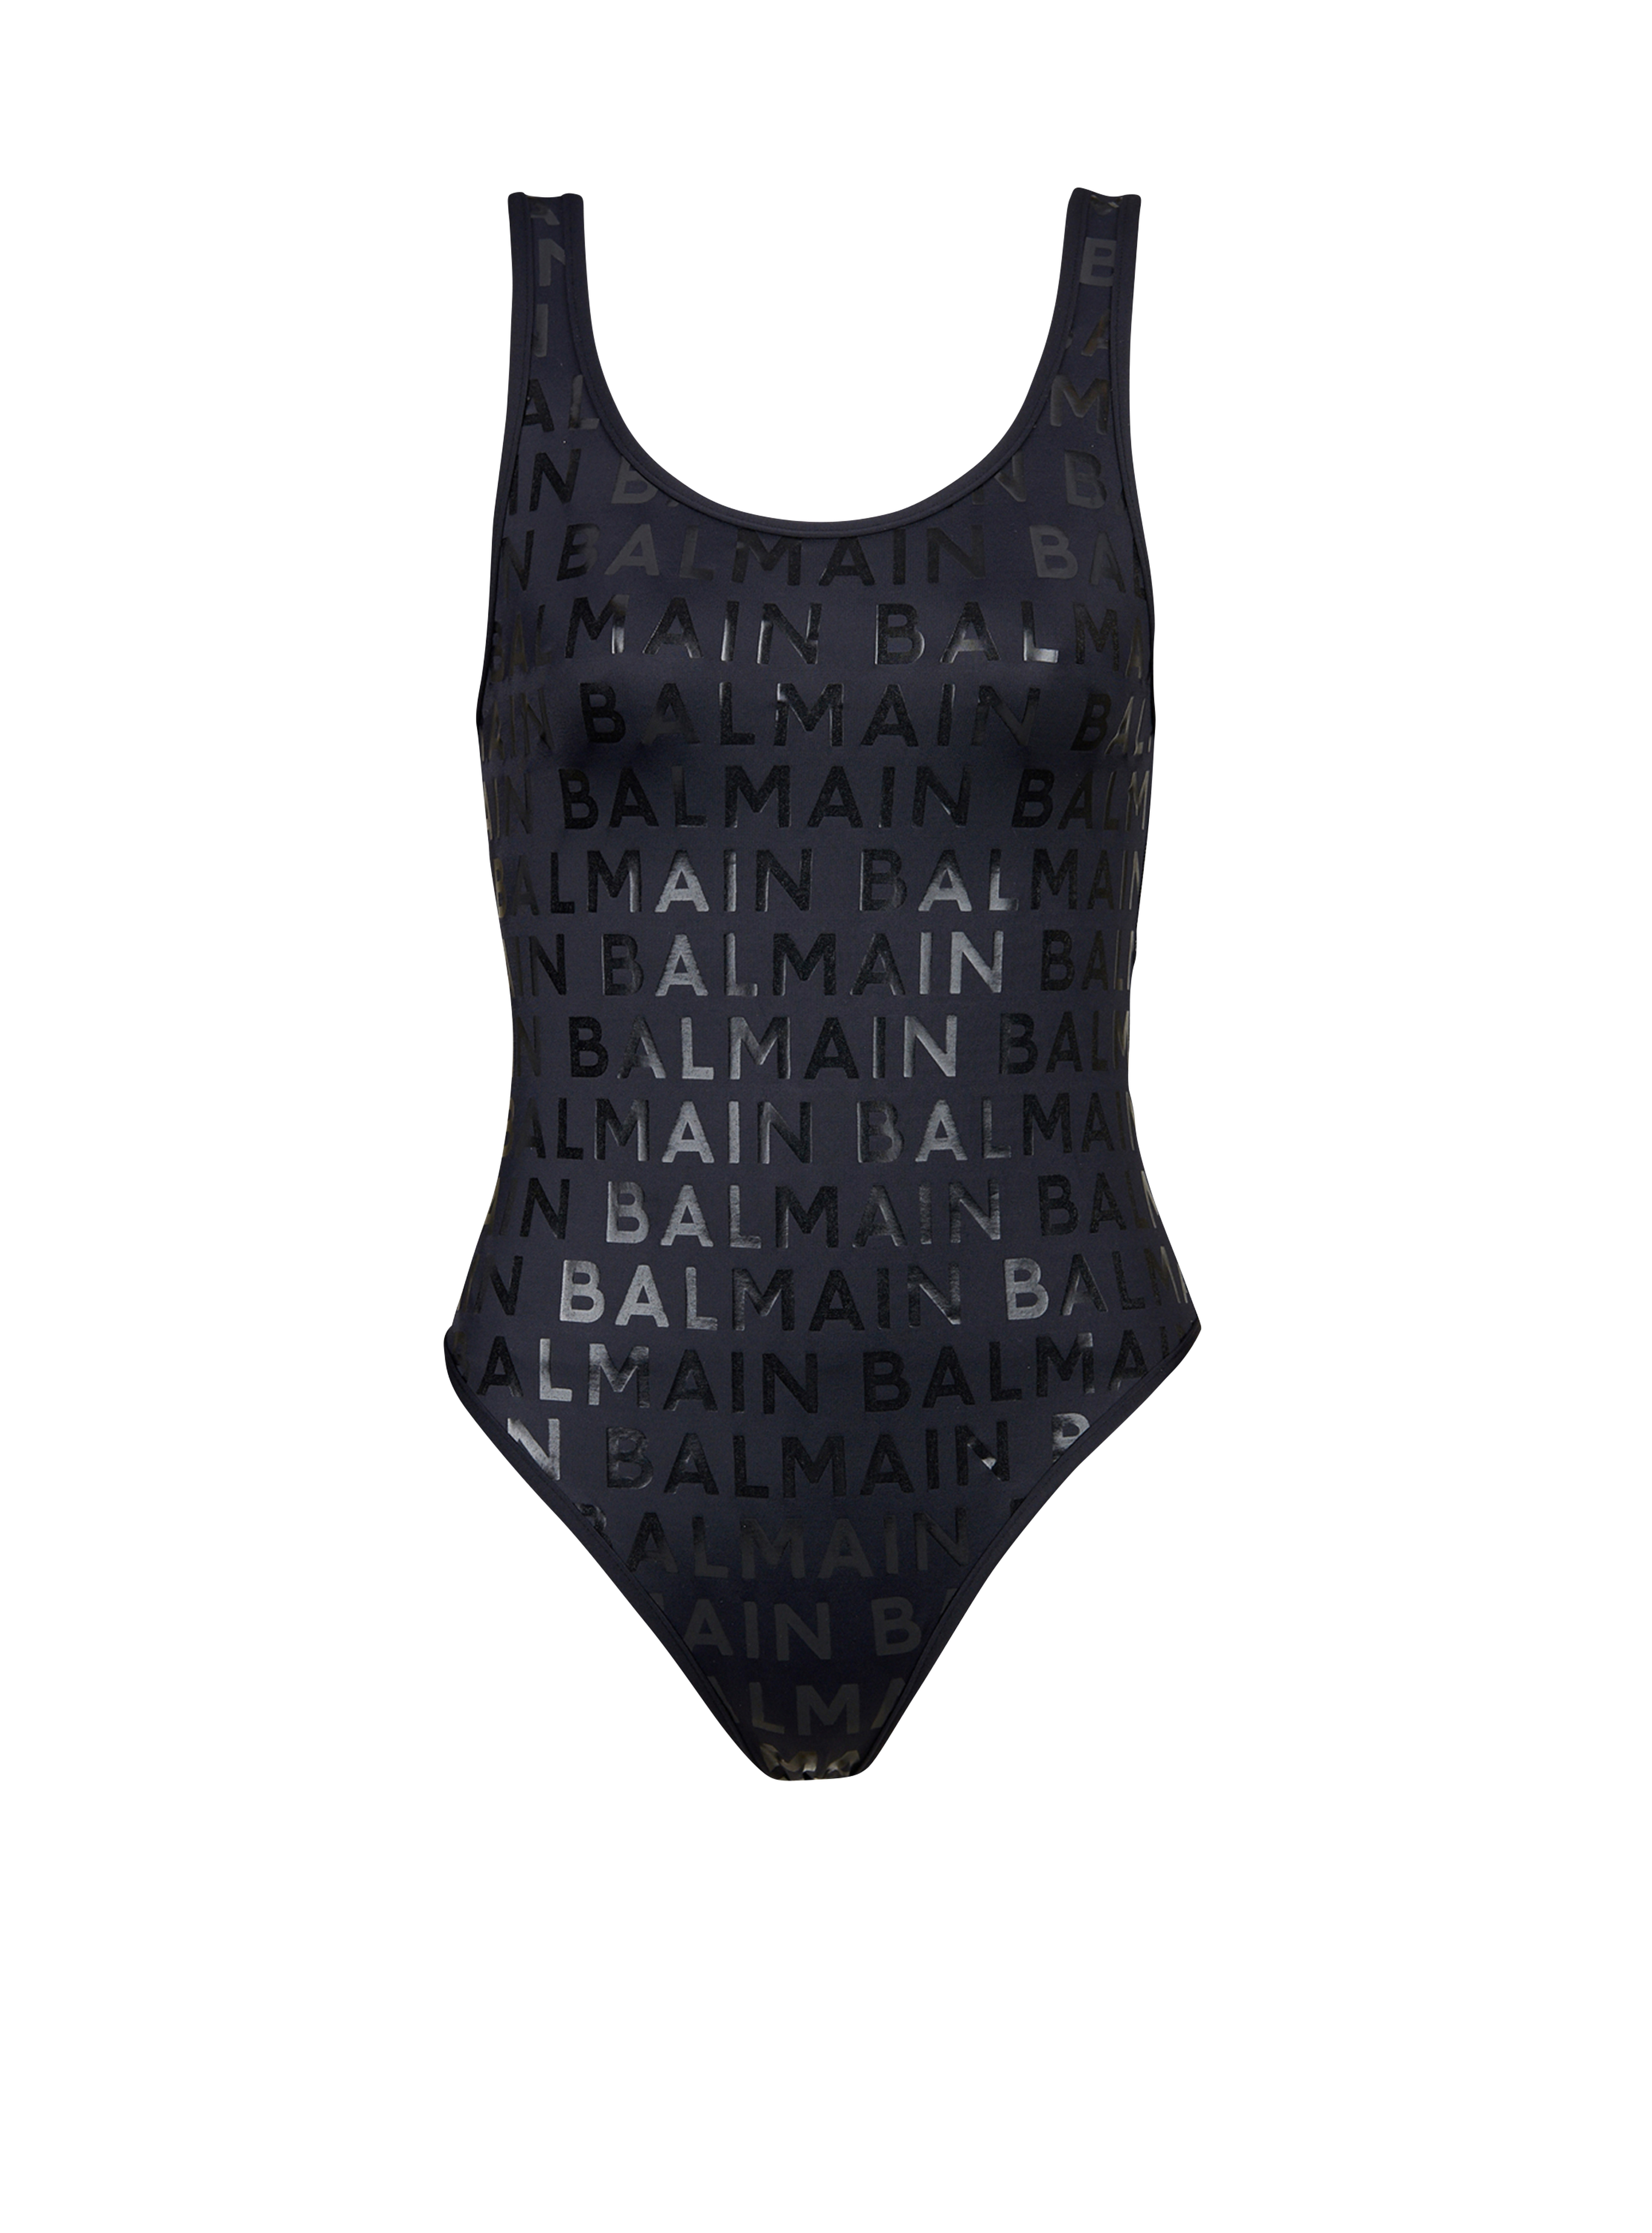 Balmain logo swimsuit, black